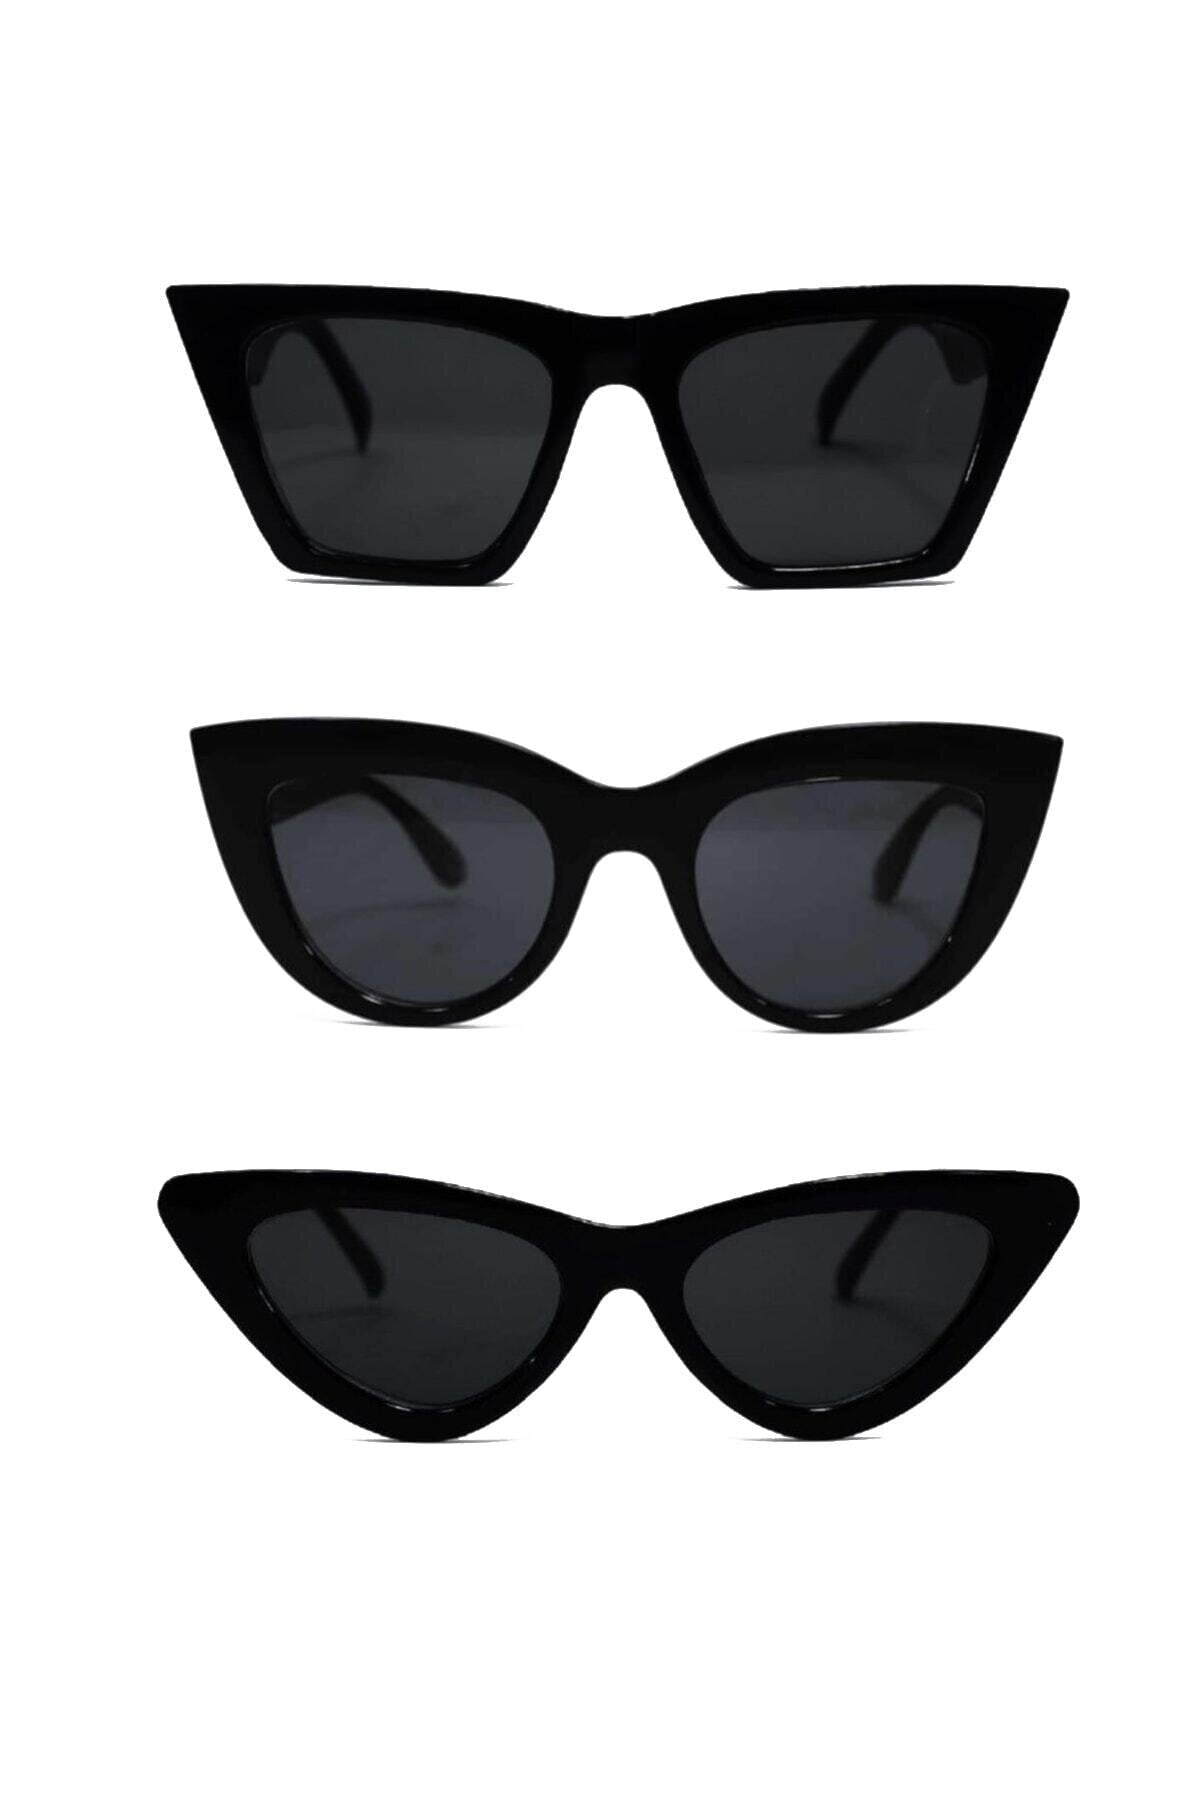 3 -set female sunglasses young glasses